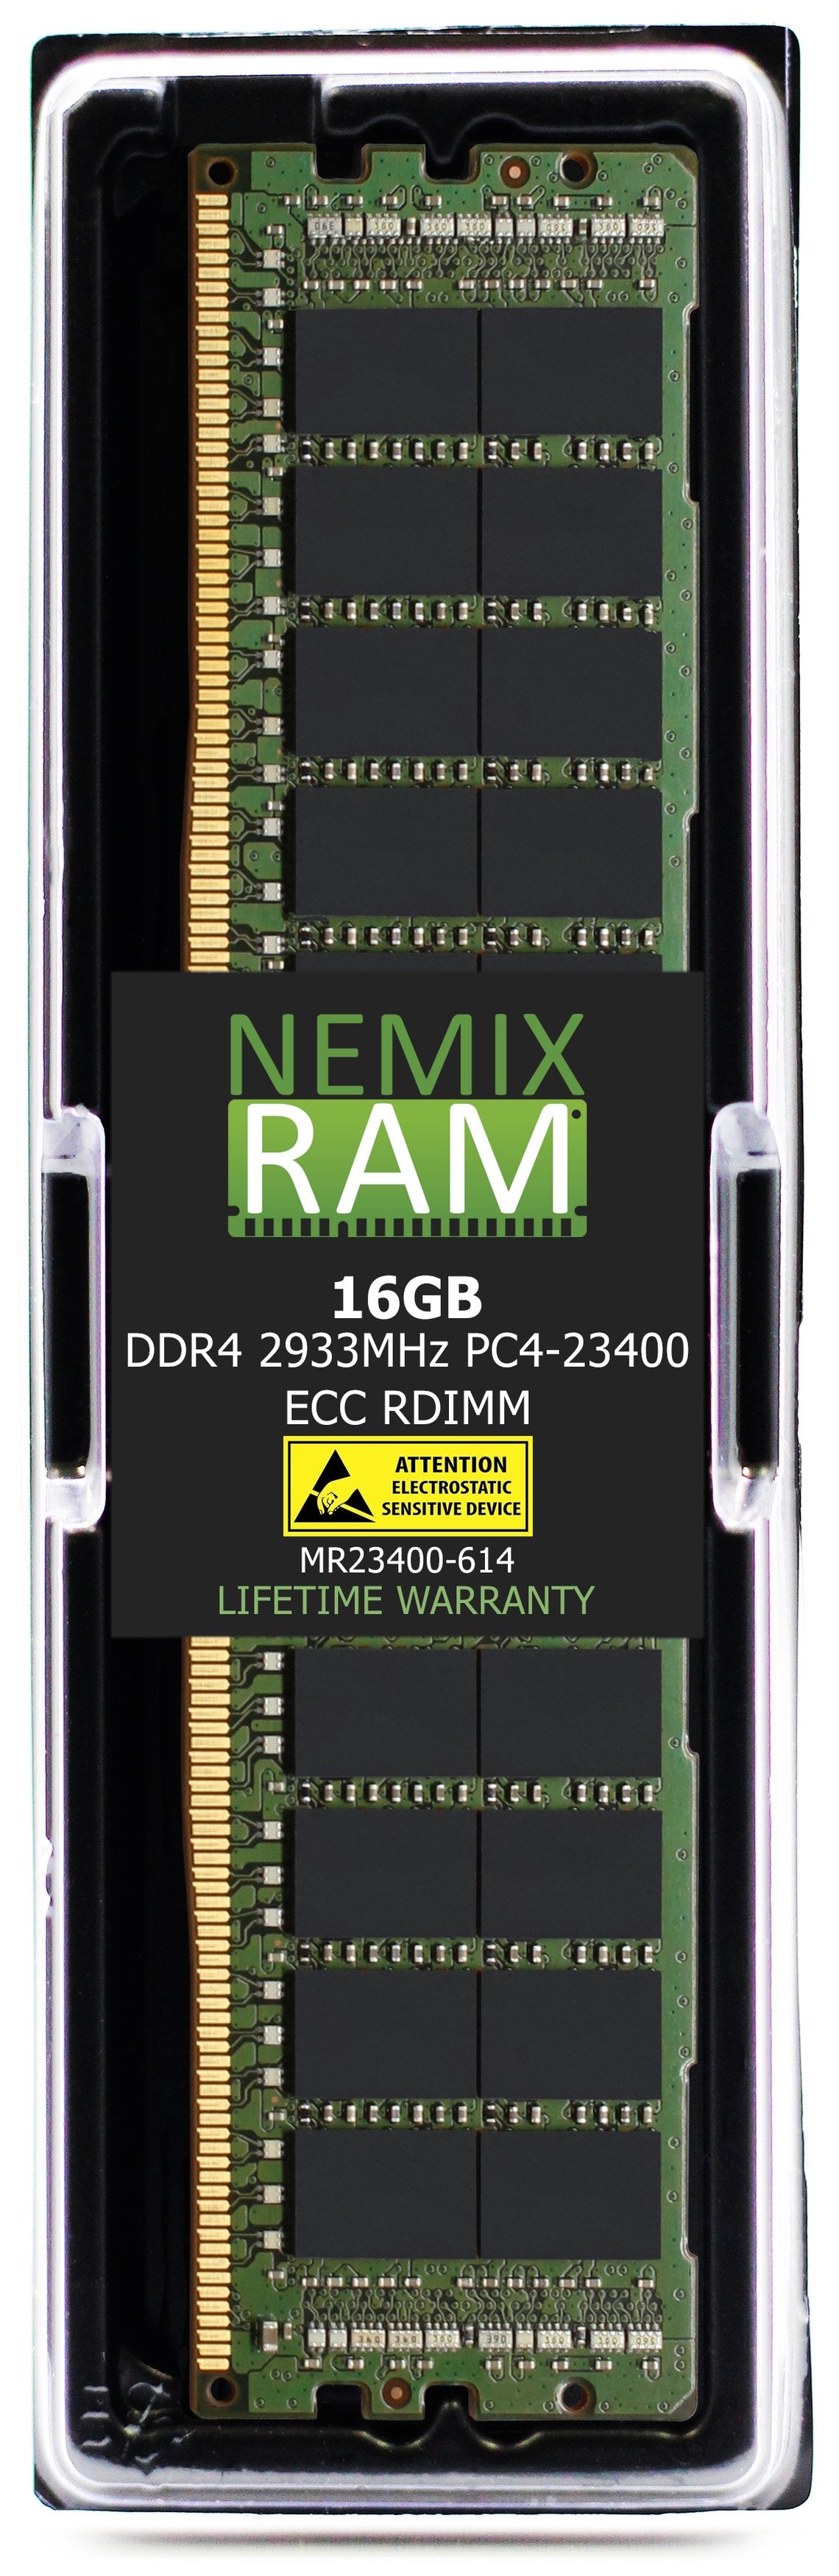 Hynix HMA82GR7JJR4N-WM 16GB DDR4 2933MHZ PC4-23400 RDIMM Compatible Memory Module